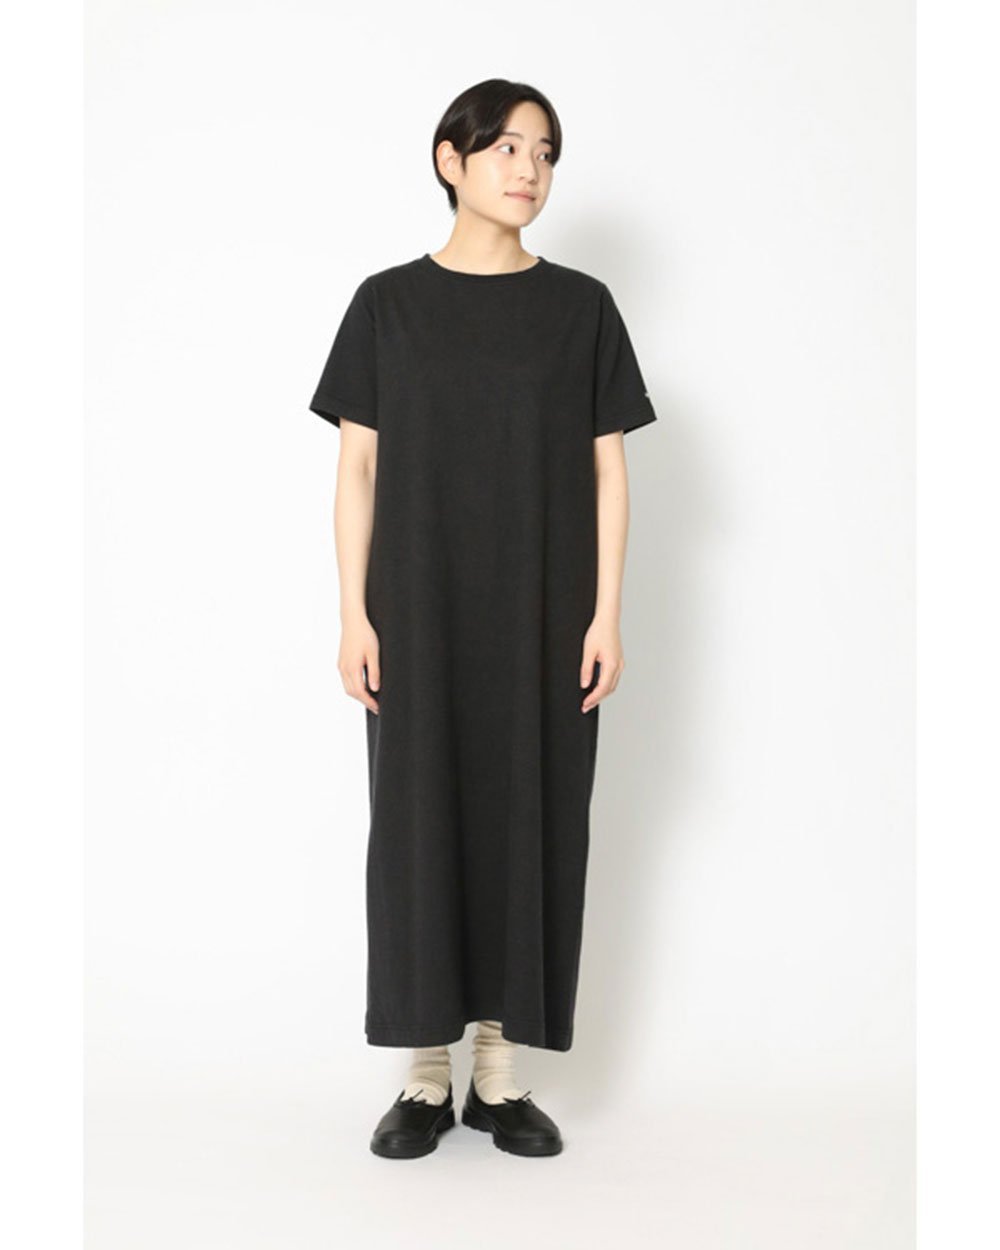 楽天Rakuten FashionSnow Peak Recycled Cotton Heavy Dress スノーピーク ワンピース・ドレス ドレス ブラック ホワイト グレー【送料無料】